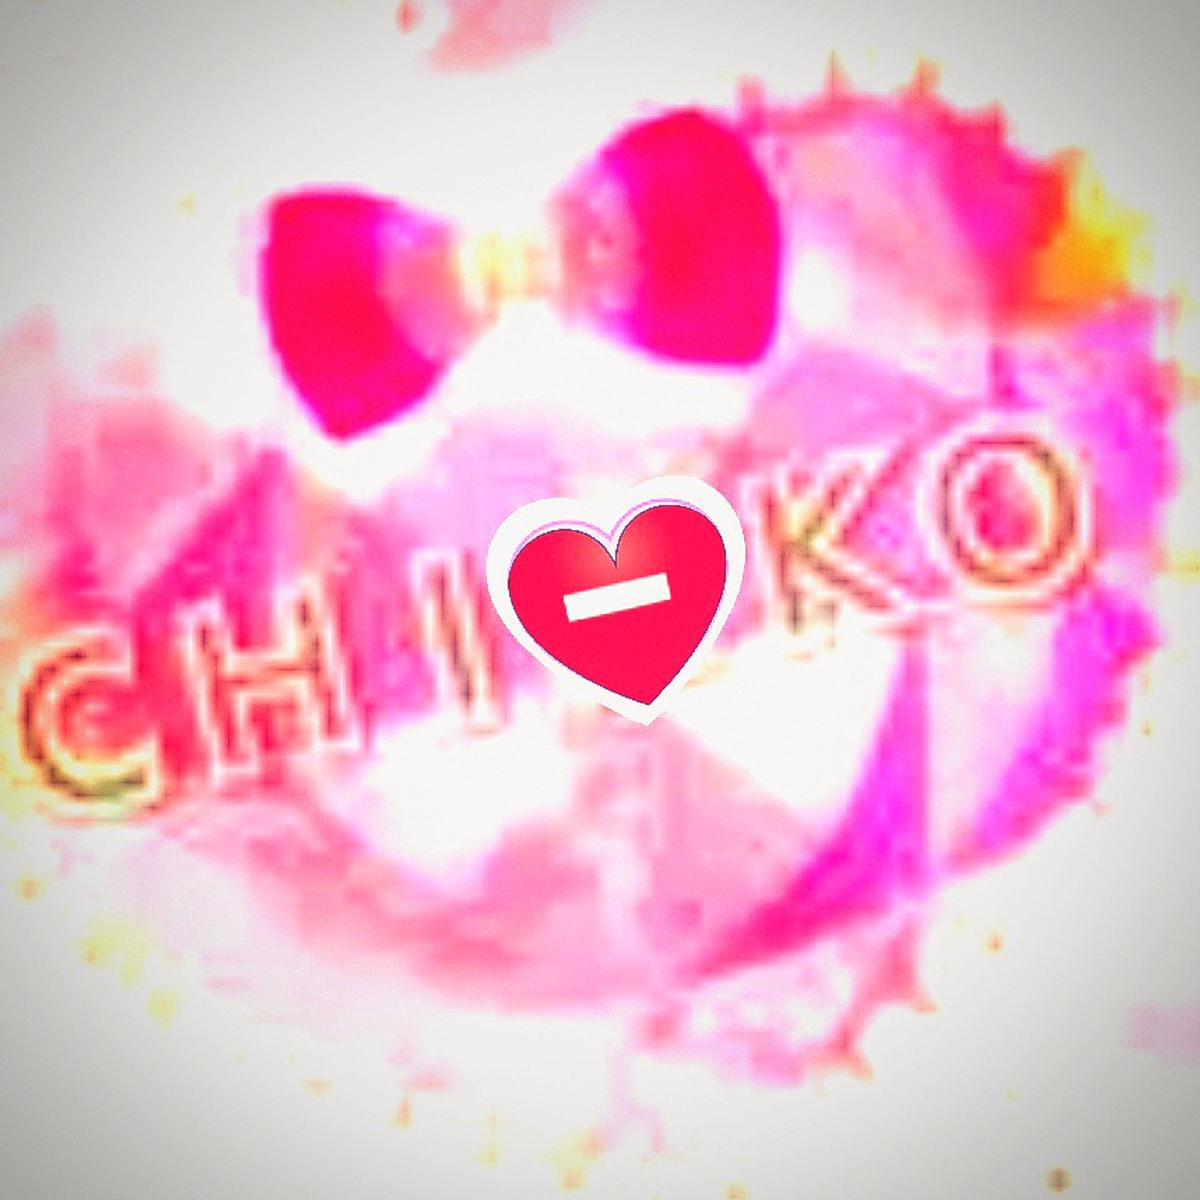 chiーkoの画像